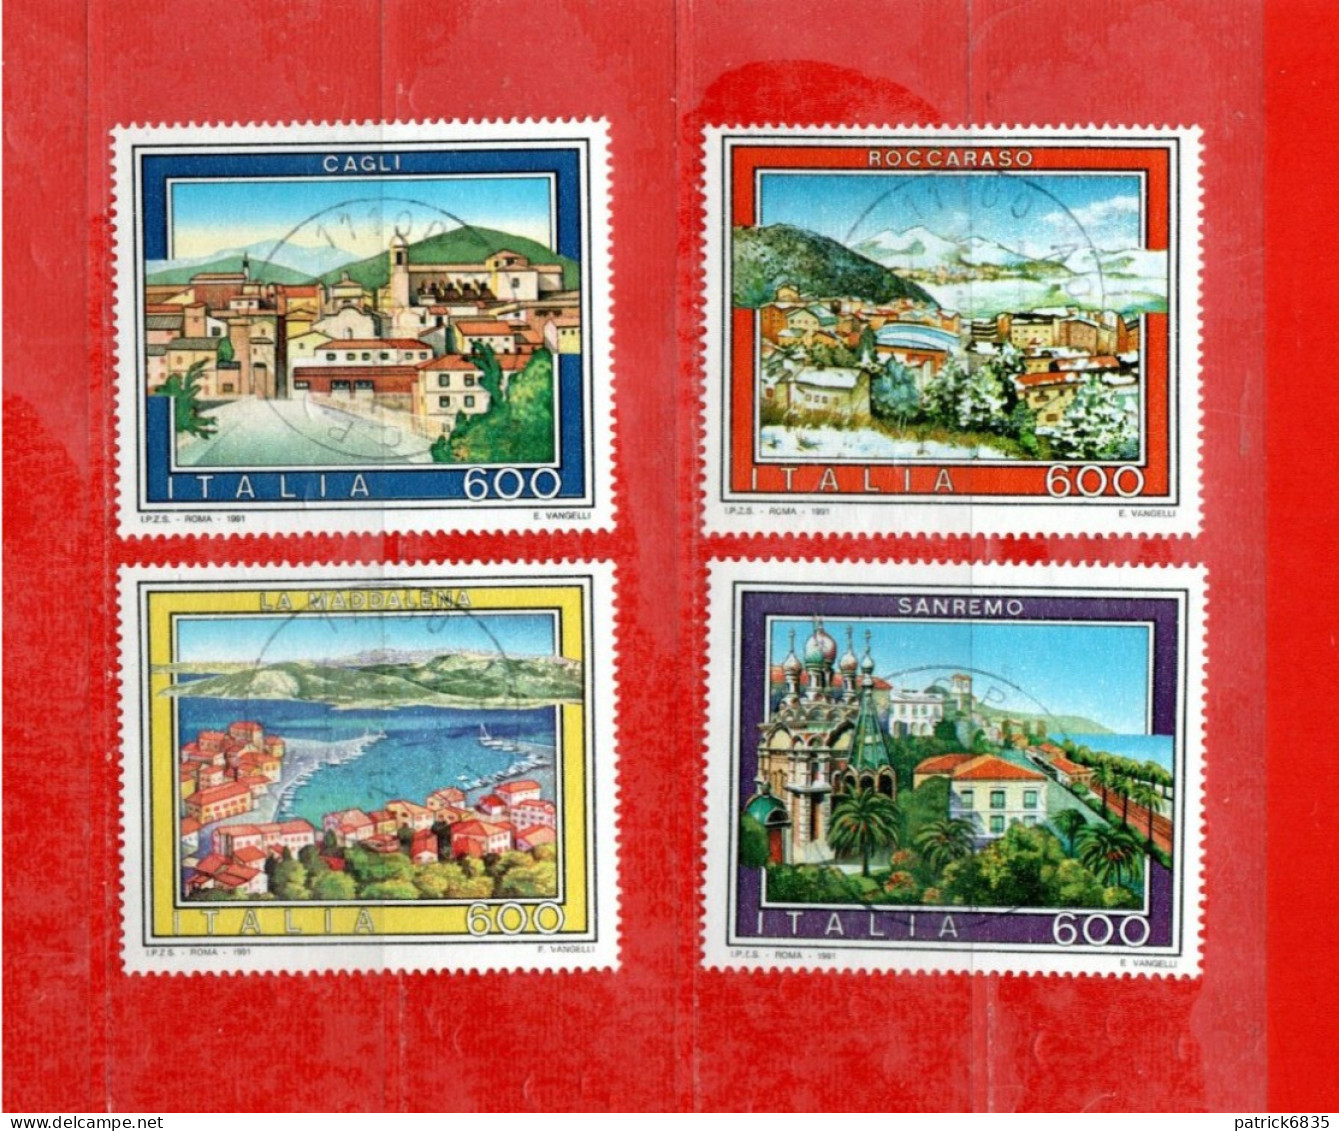 (Fr) Italia ° -1991 - TURISTICA, Sanremo-Cagli-Roccaraso-La Maddalena. Unif. 1972 à 1975.  LUSSO - 1991-00: Used